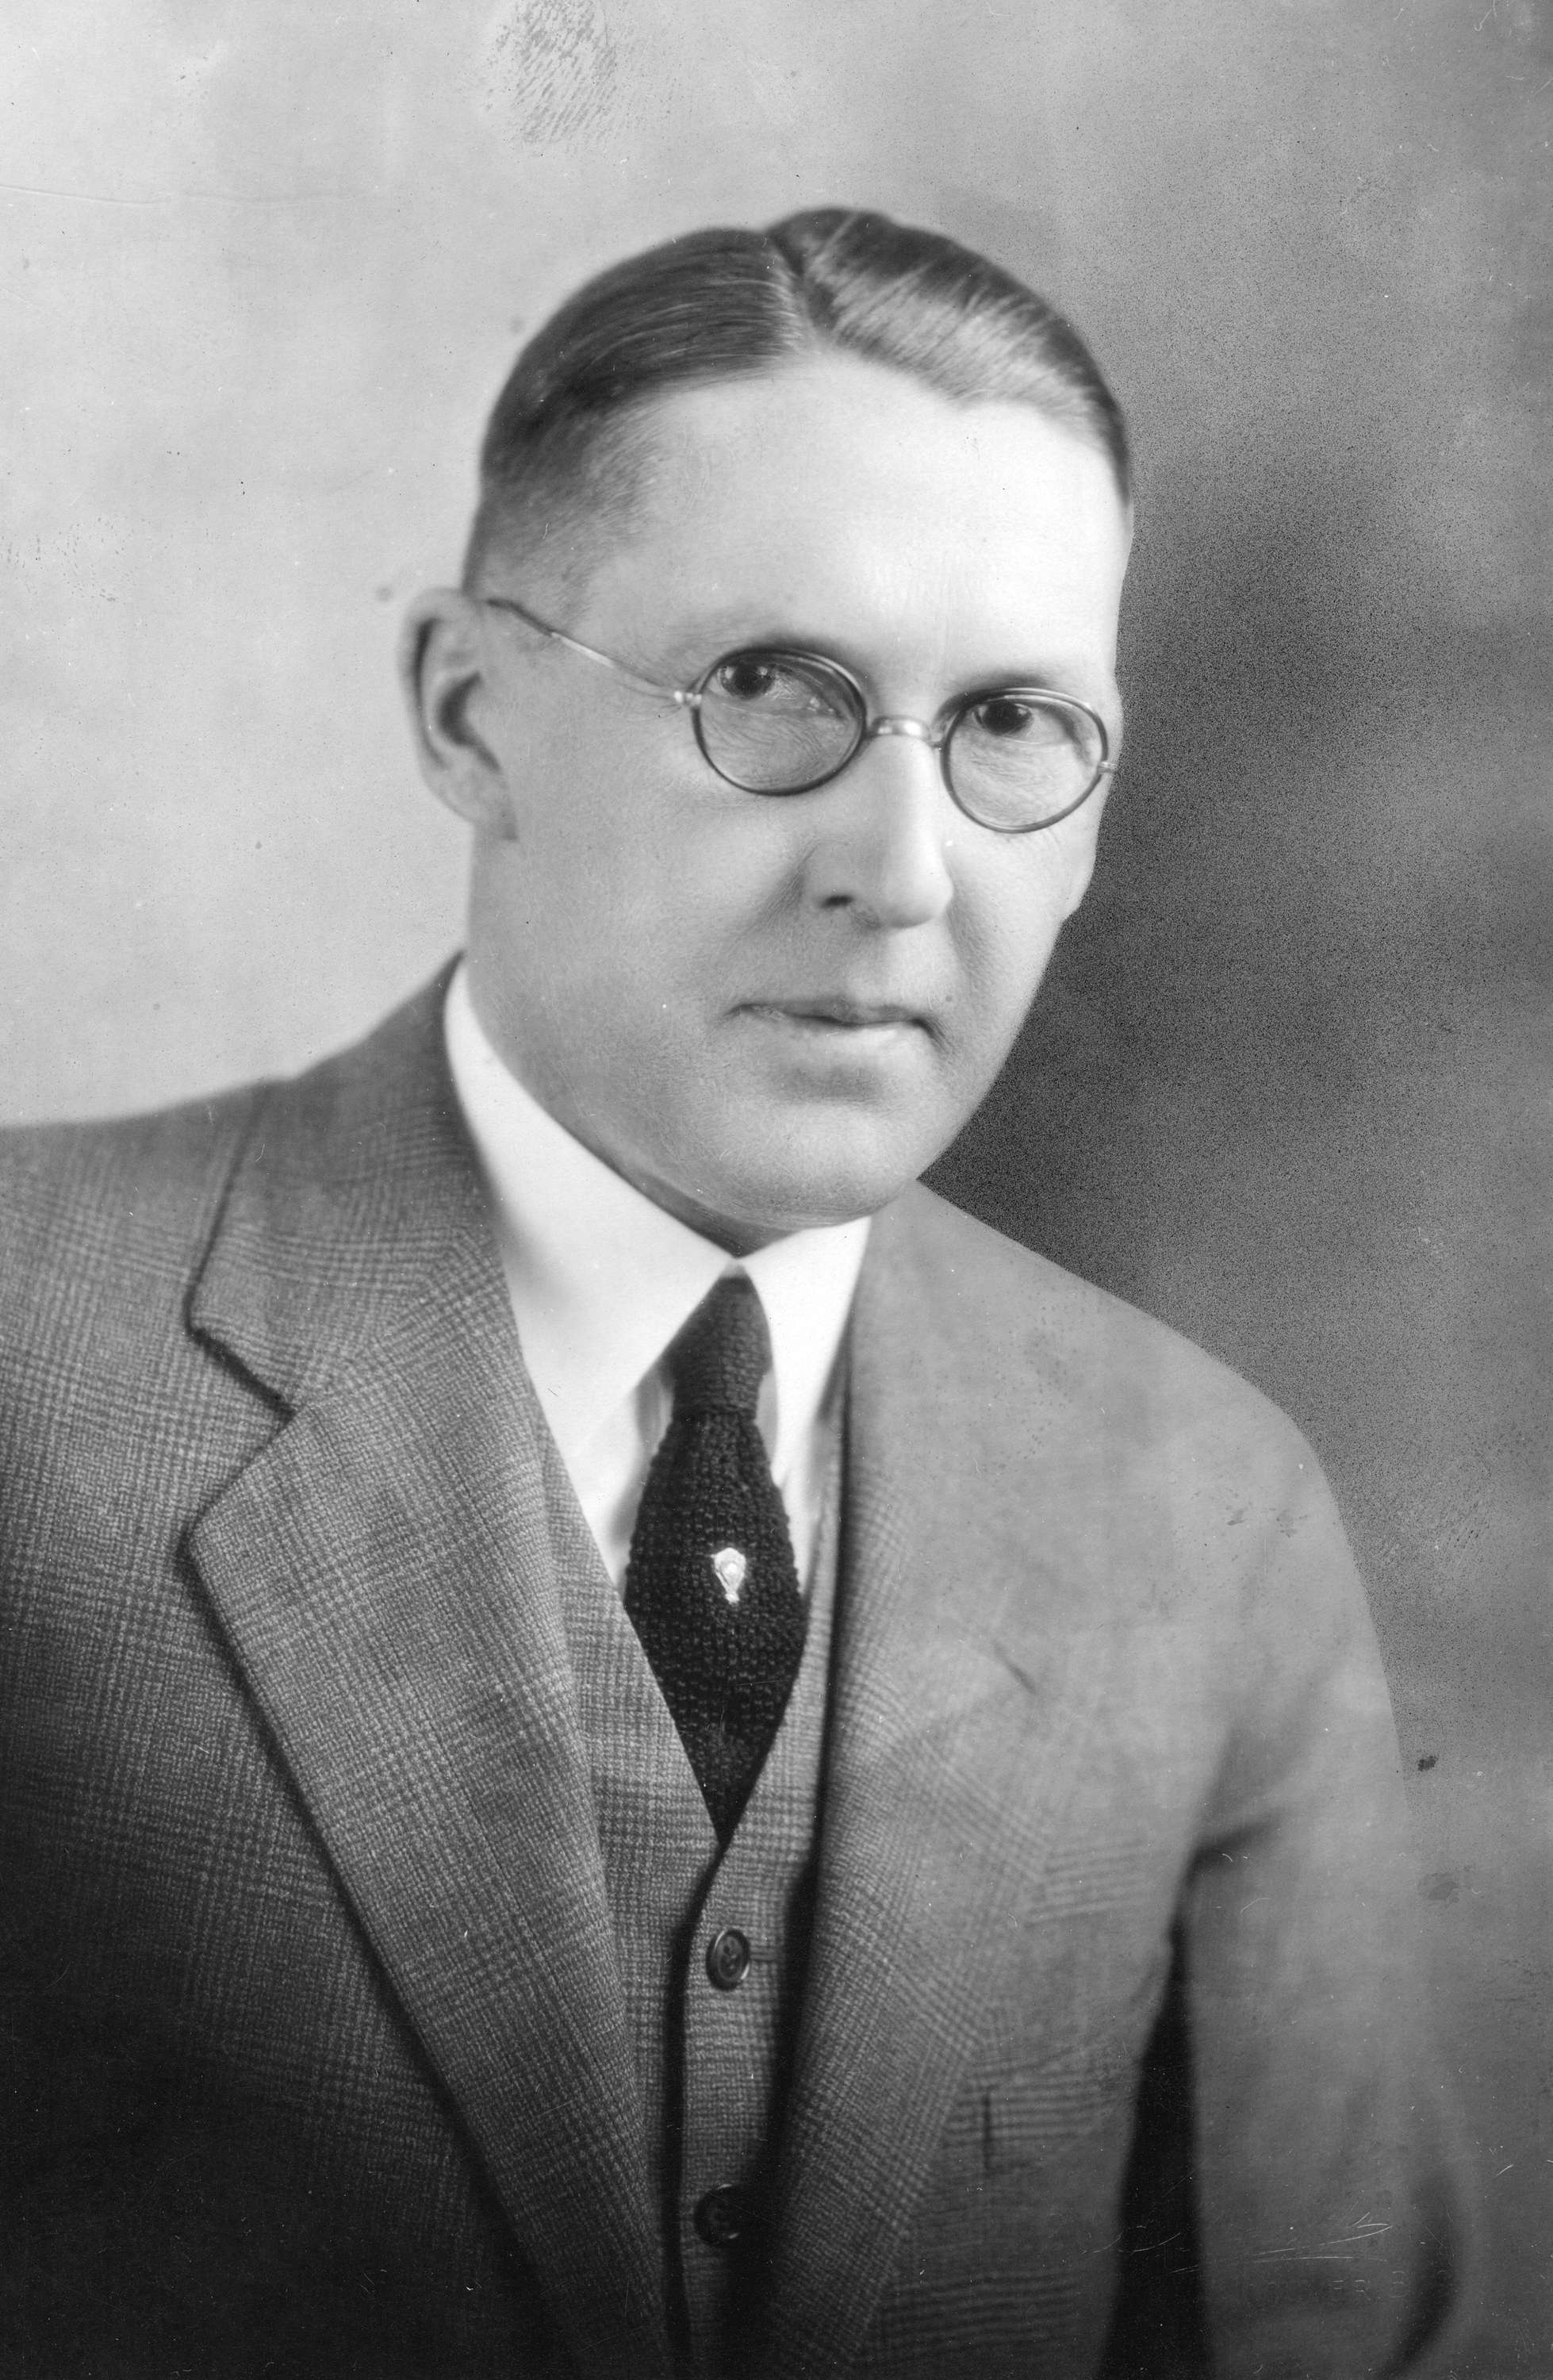 Dalton E. Gray